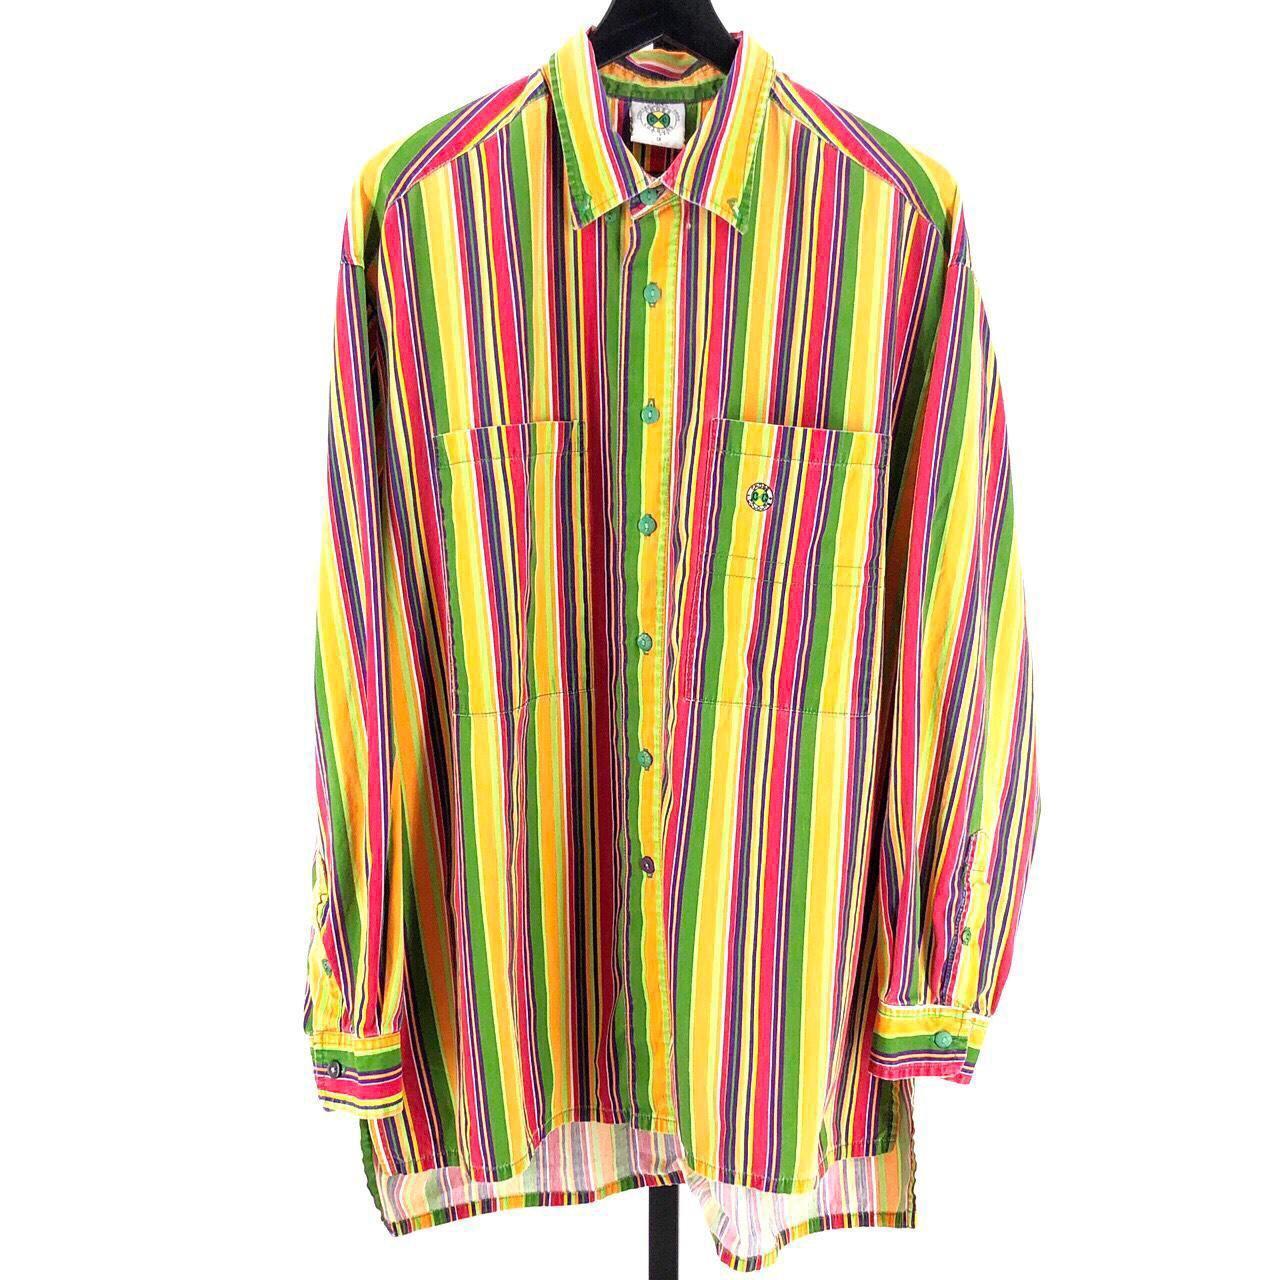 90s vintage Cross Colours button down shirt 1990s... - Depop